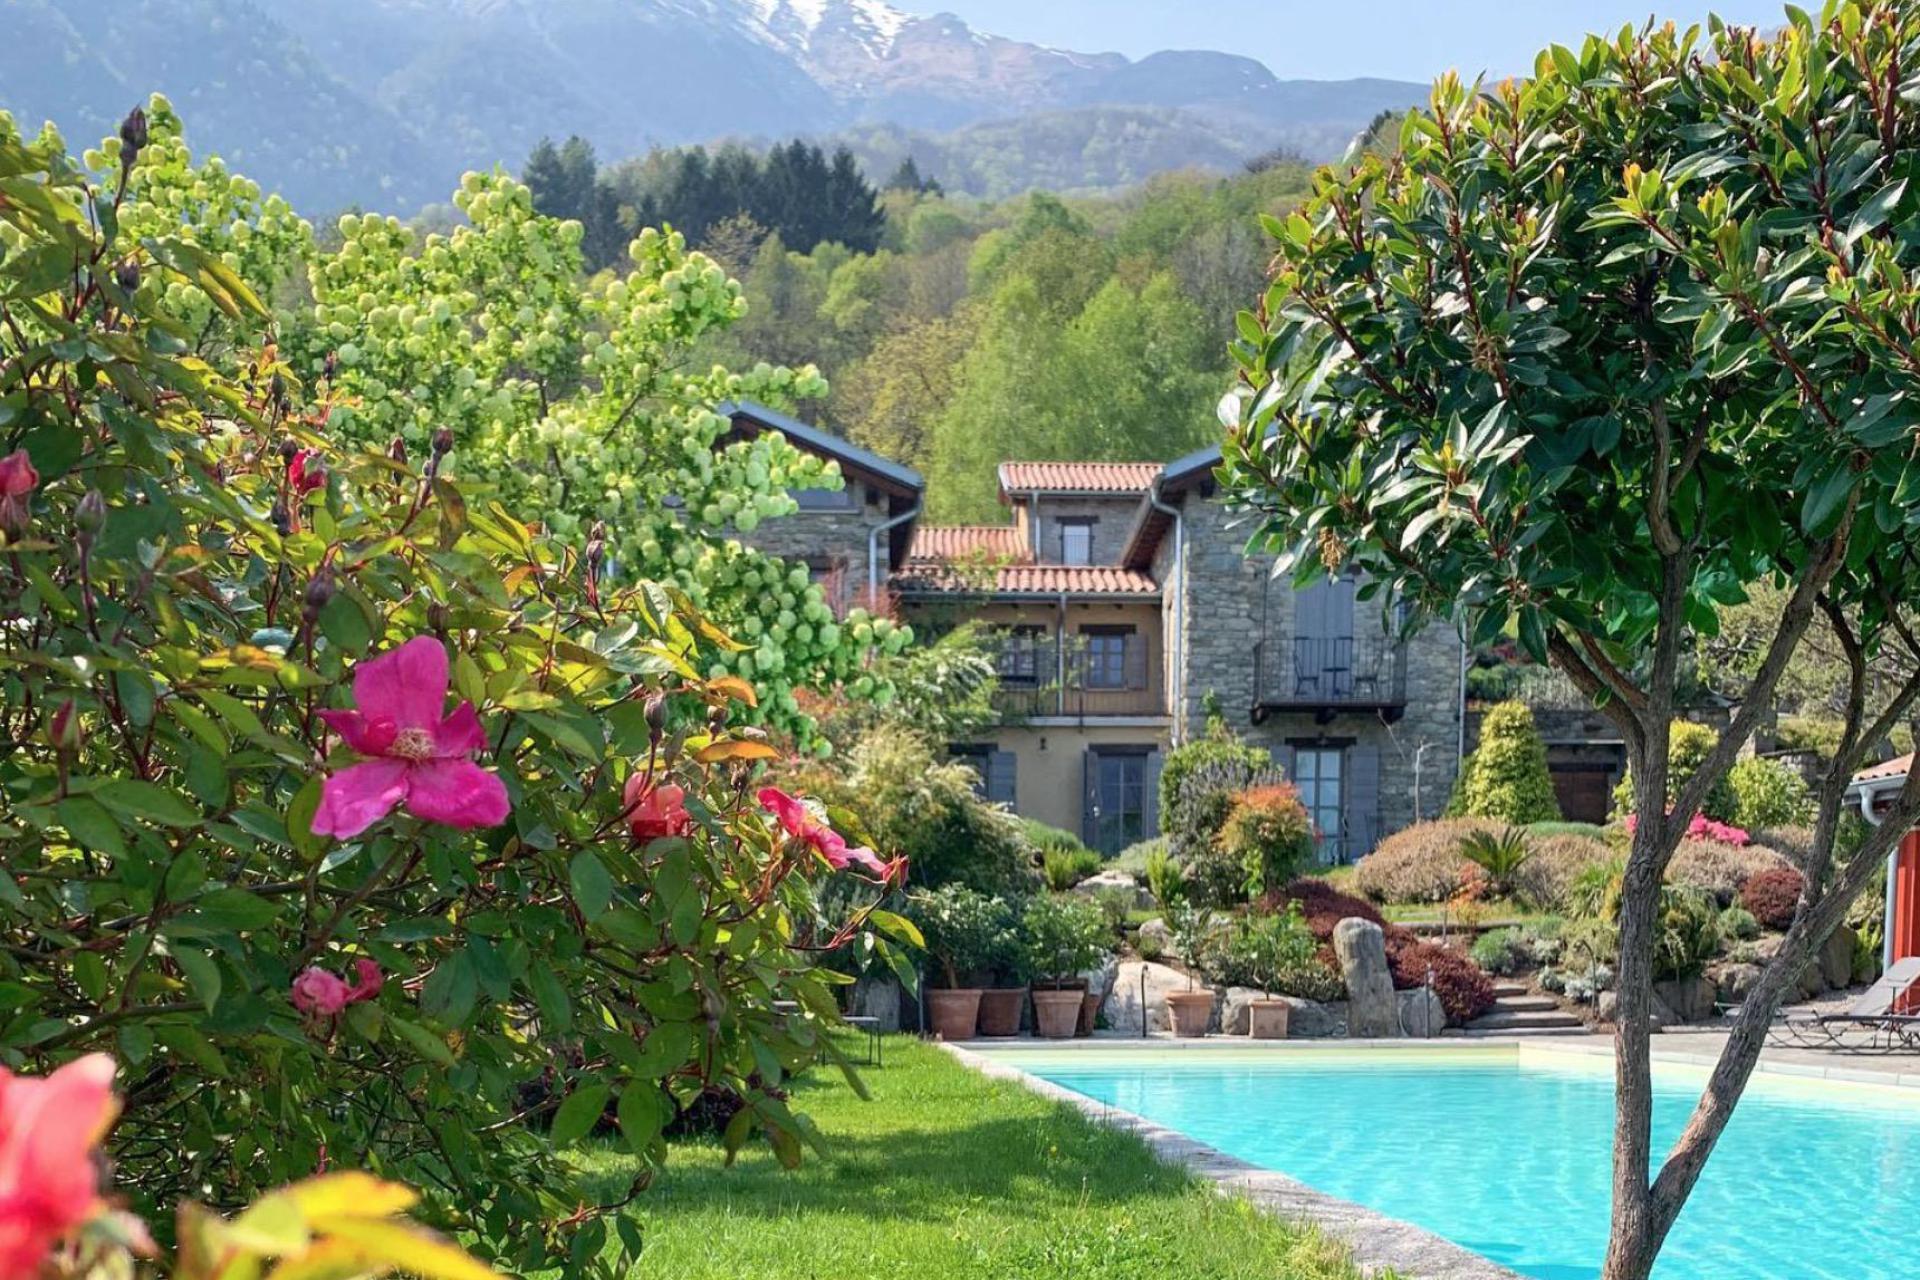 Luxuriöser Agriturismo mit Ferienzimmern, einer FeWo und Pool am Comer See!